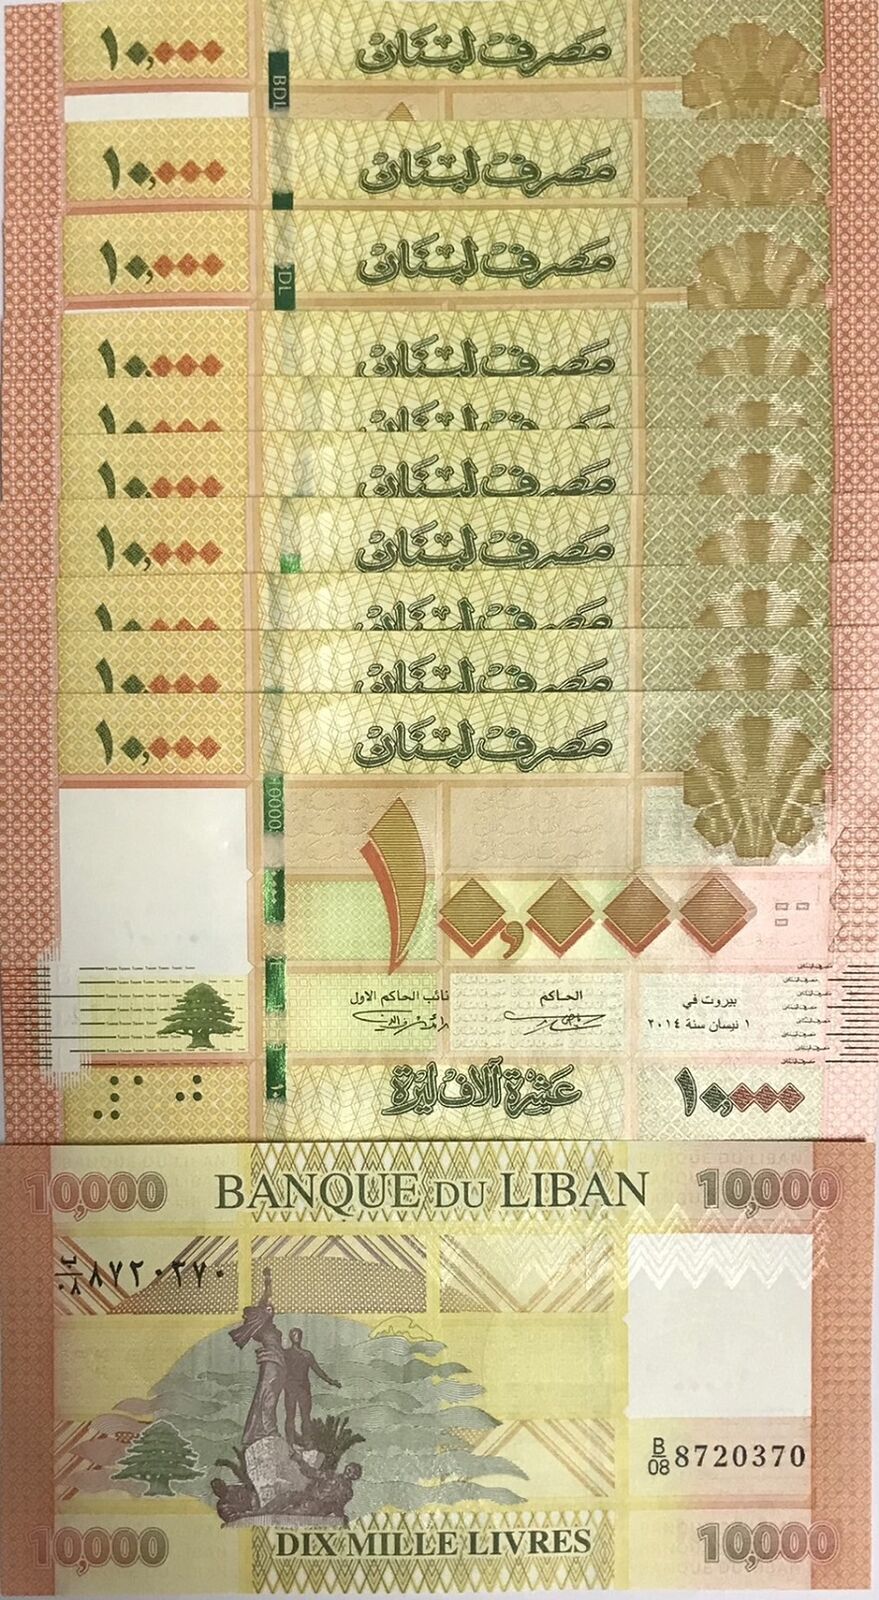 Lebanon 10000 Livres 2014 P 92 b UNC LOT 10 PCS